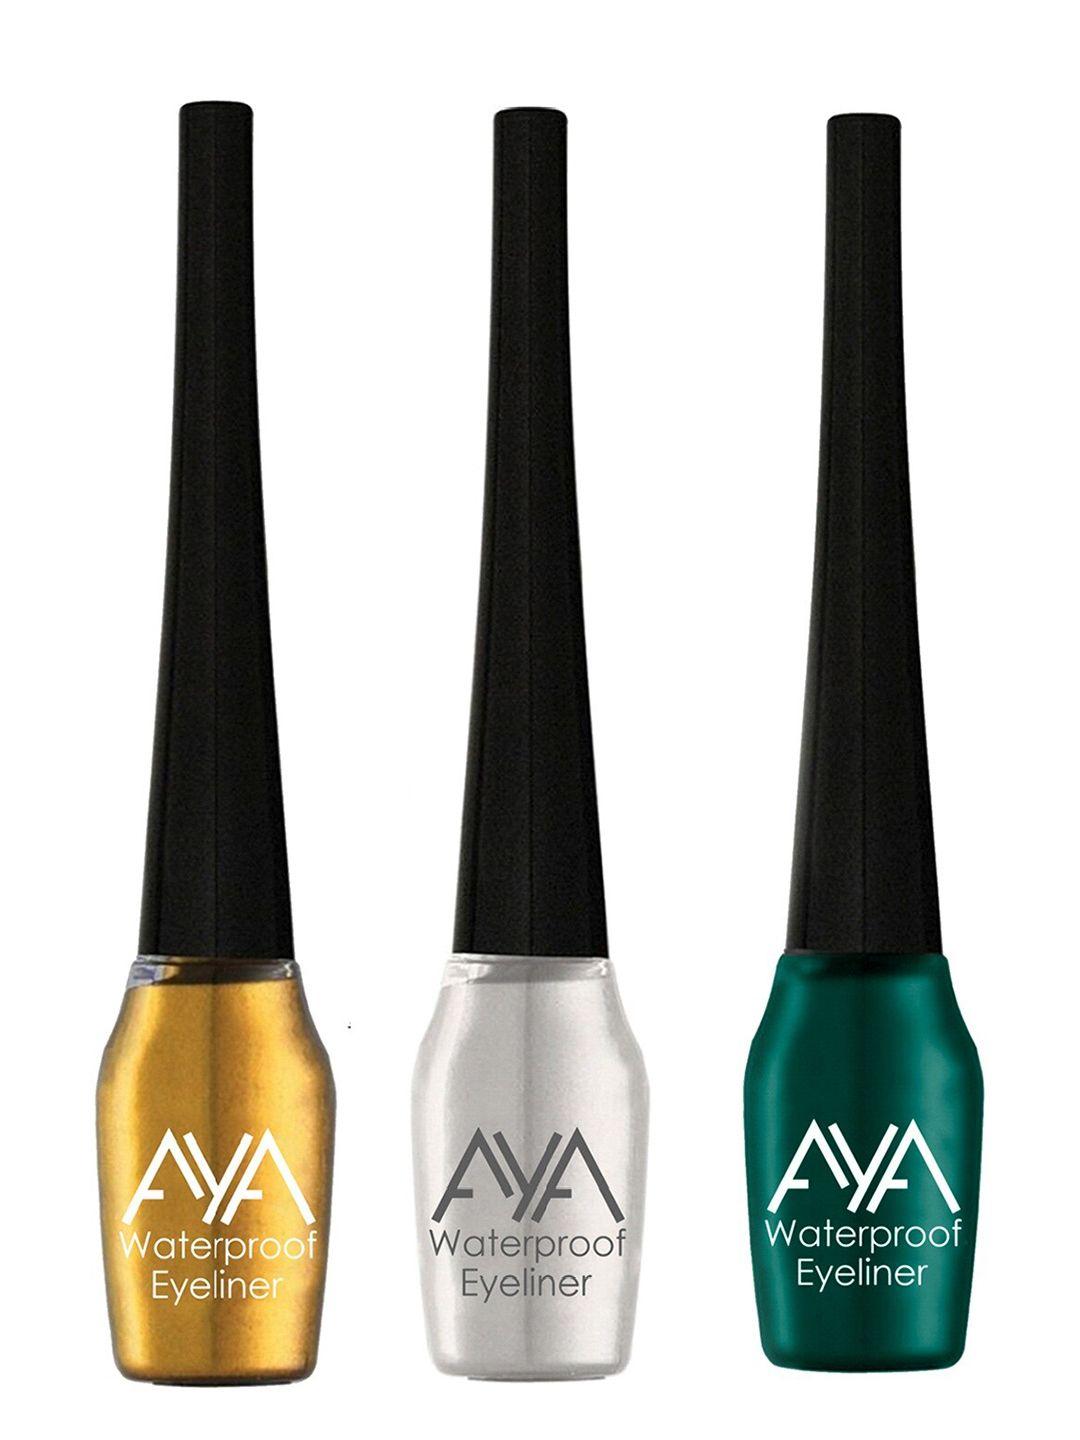 aya set of 3 waterproof liquid eyeliner - golden, silver, green